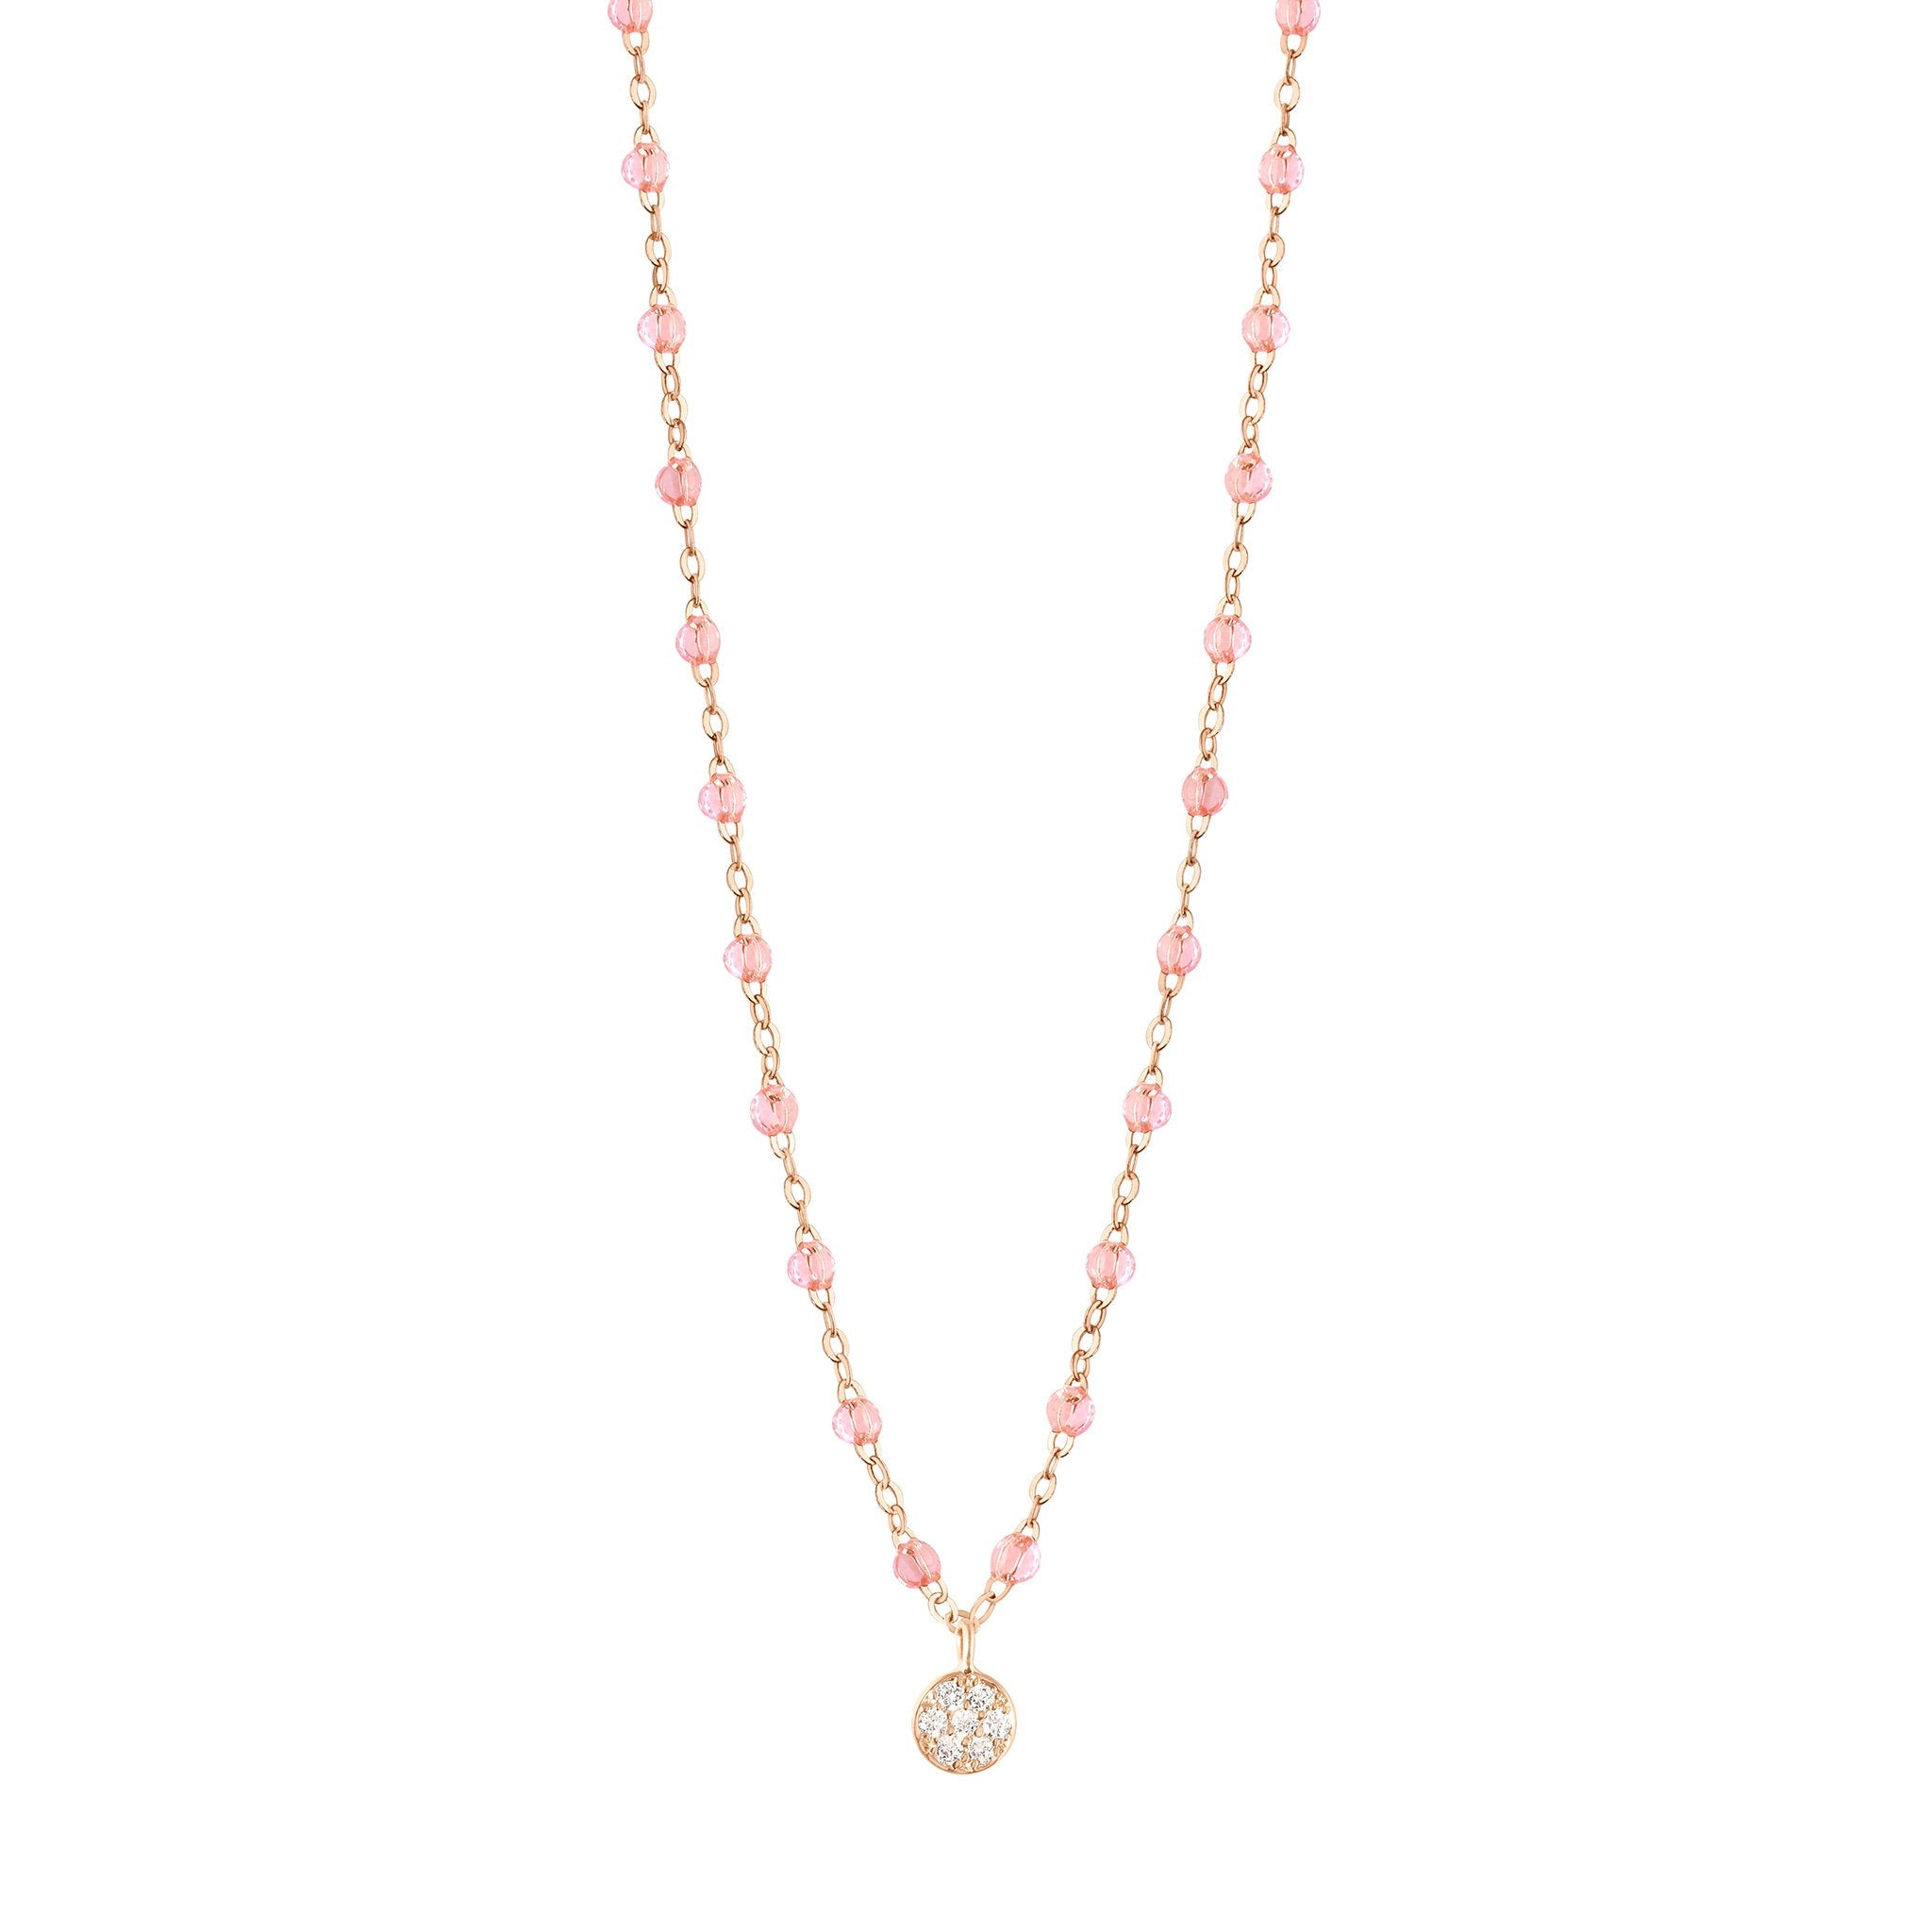 Gigi Clozeau - Puce Classic Gigi Rosée diamond necklace, Rose Gold, 16.5"